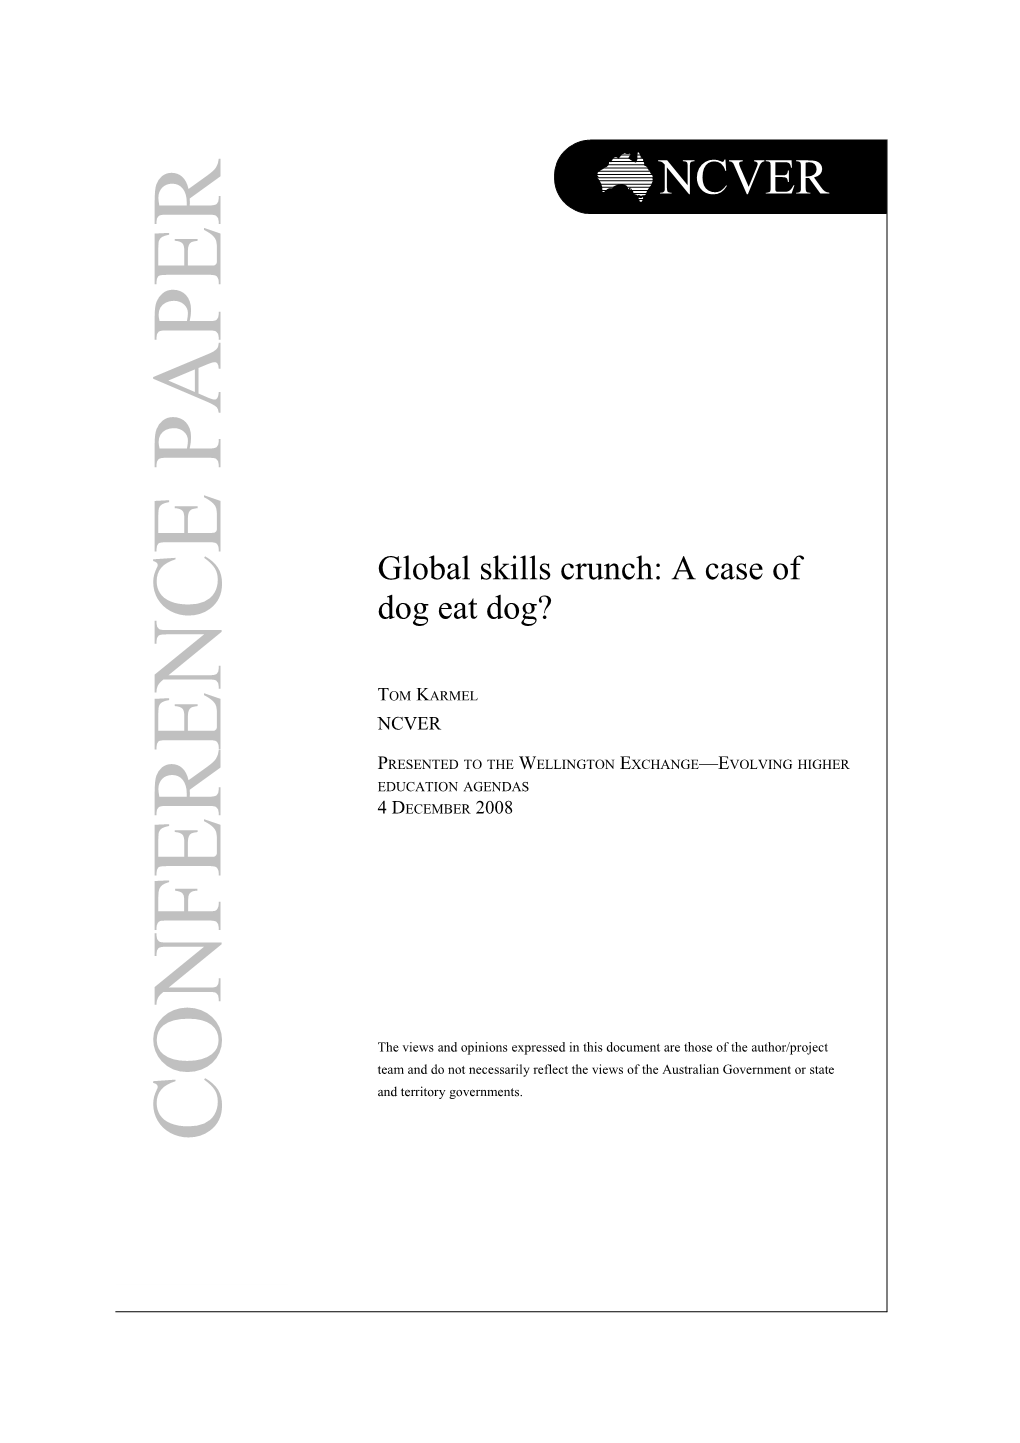 Global Skills Crunch